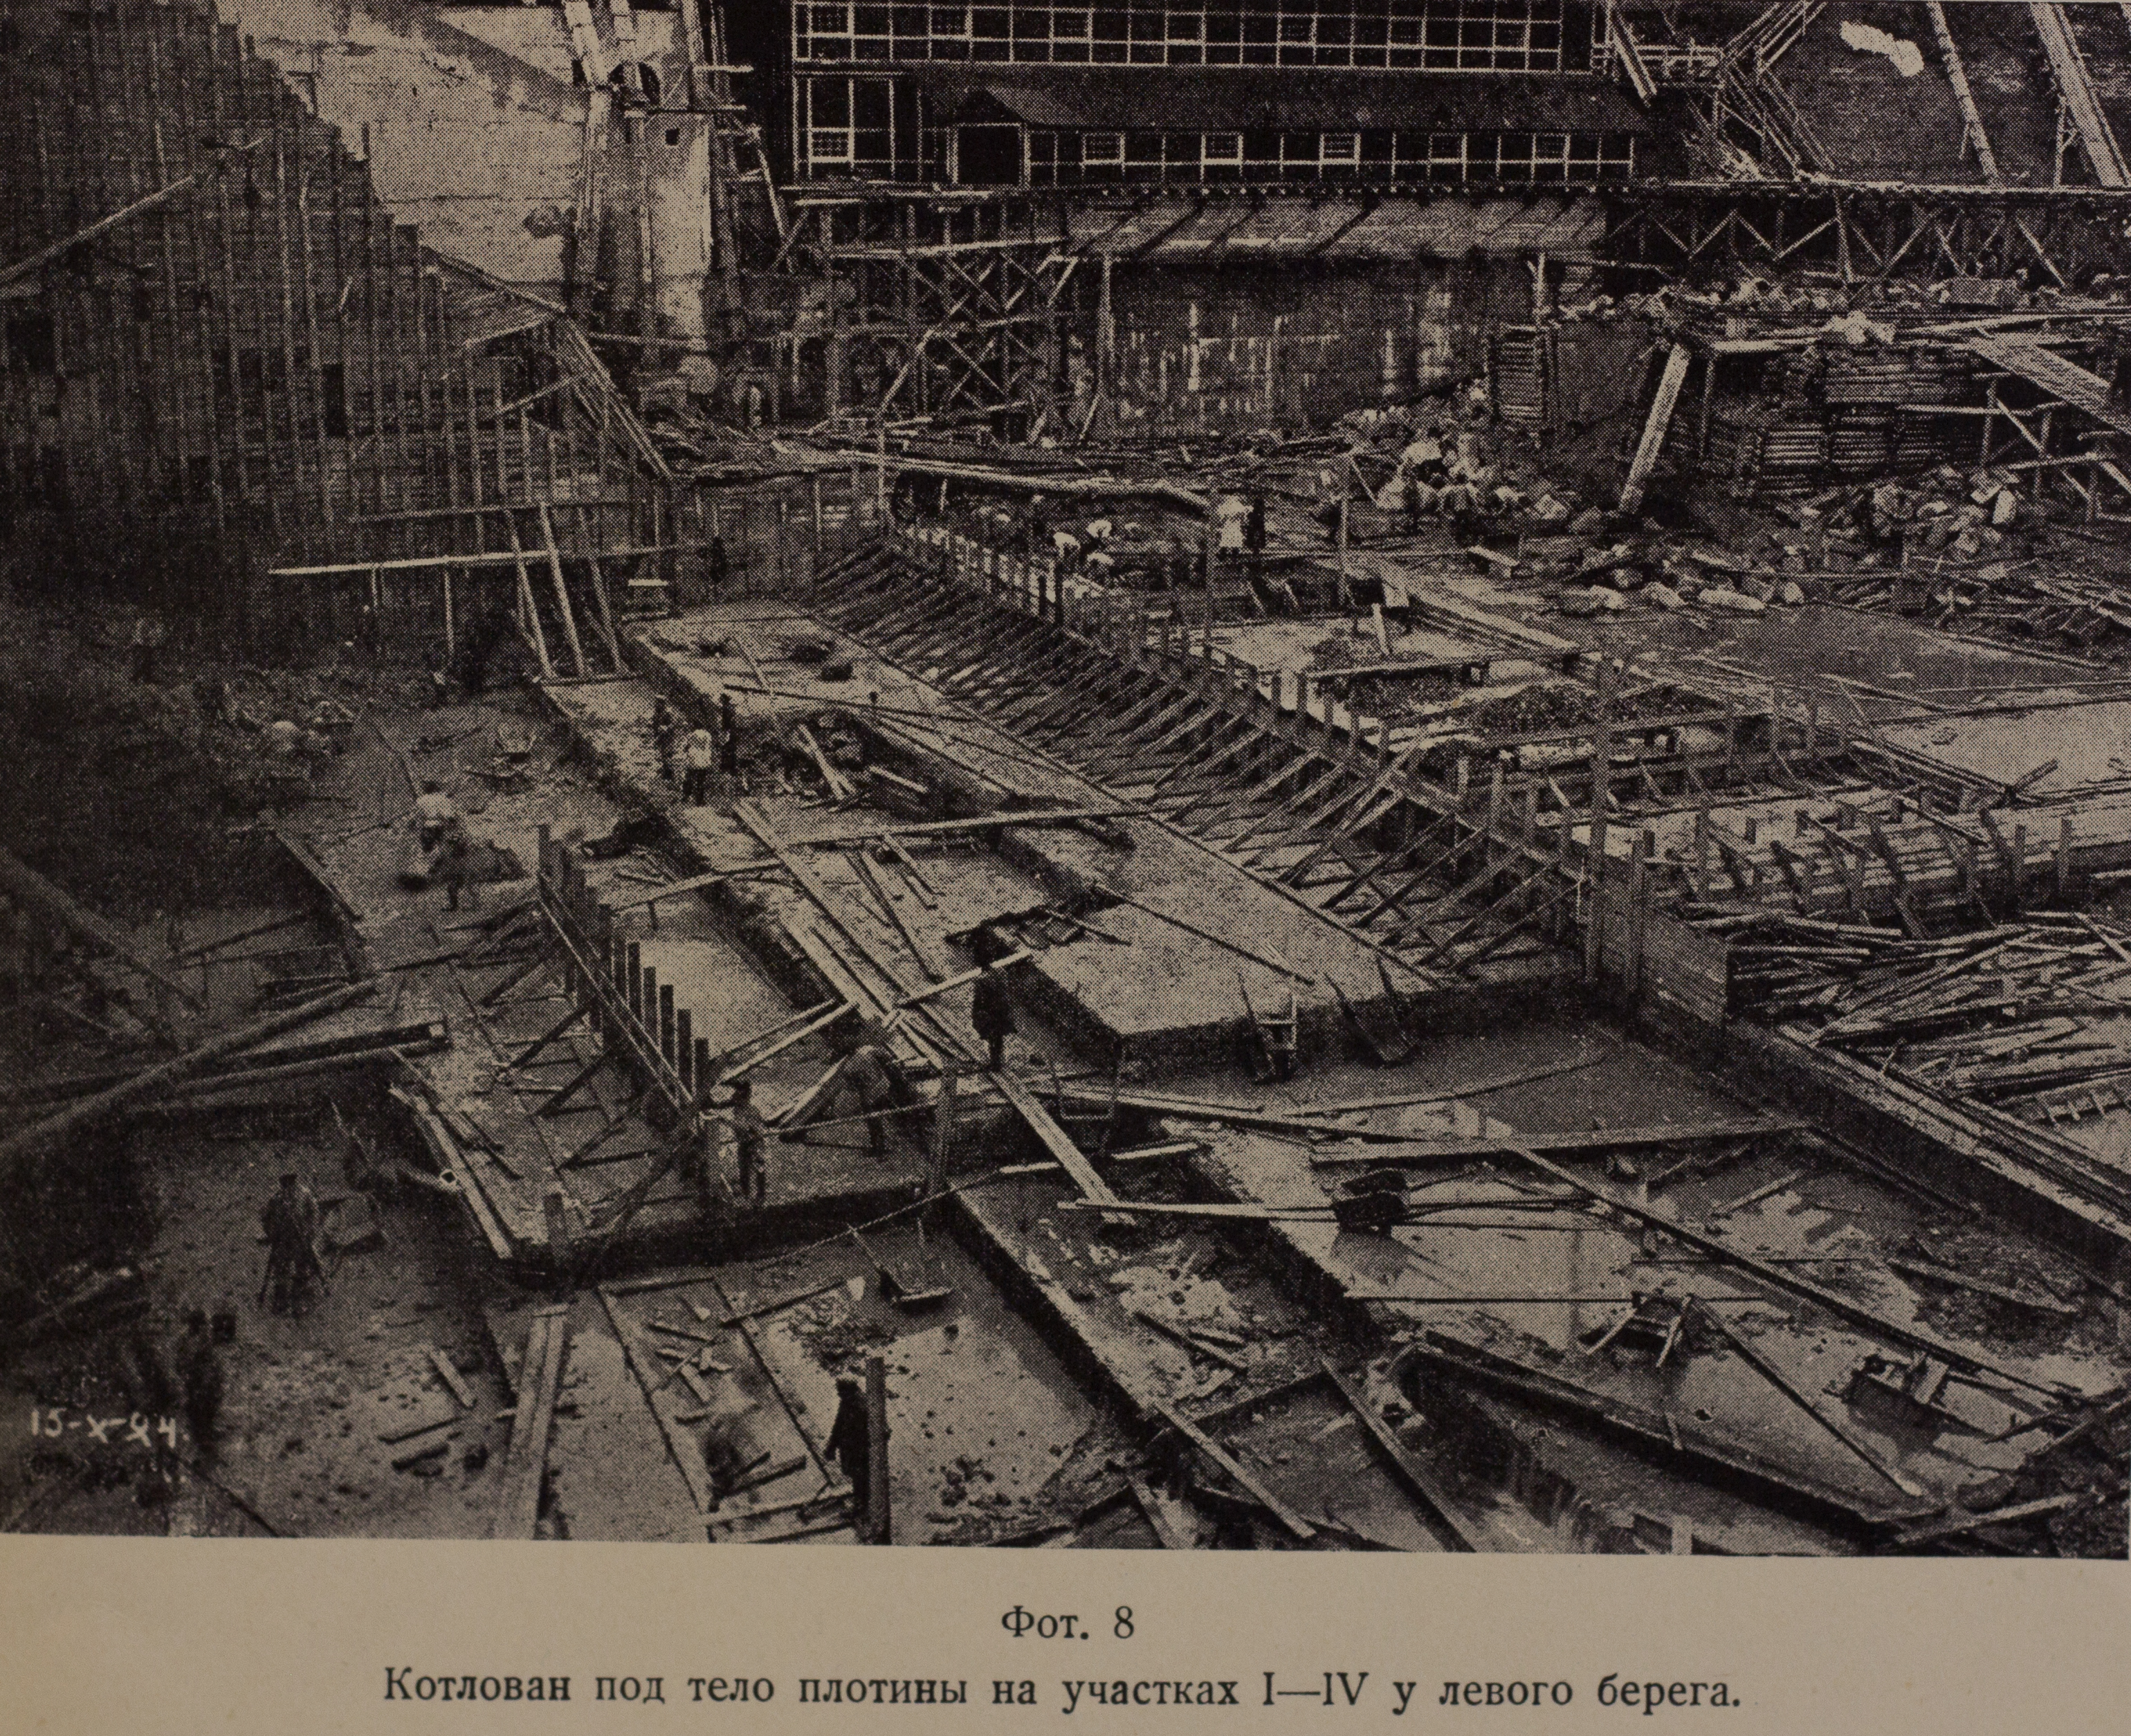 Котлован под тело плотины на участках I-IV у левого берега (1924 г.)